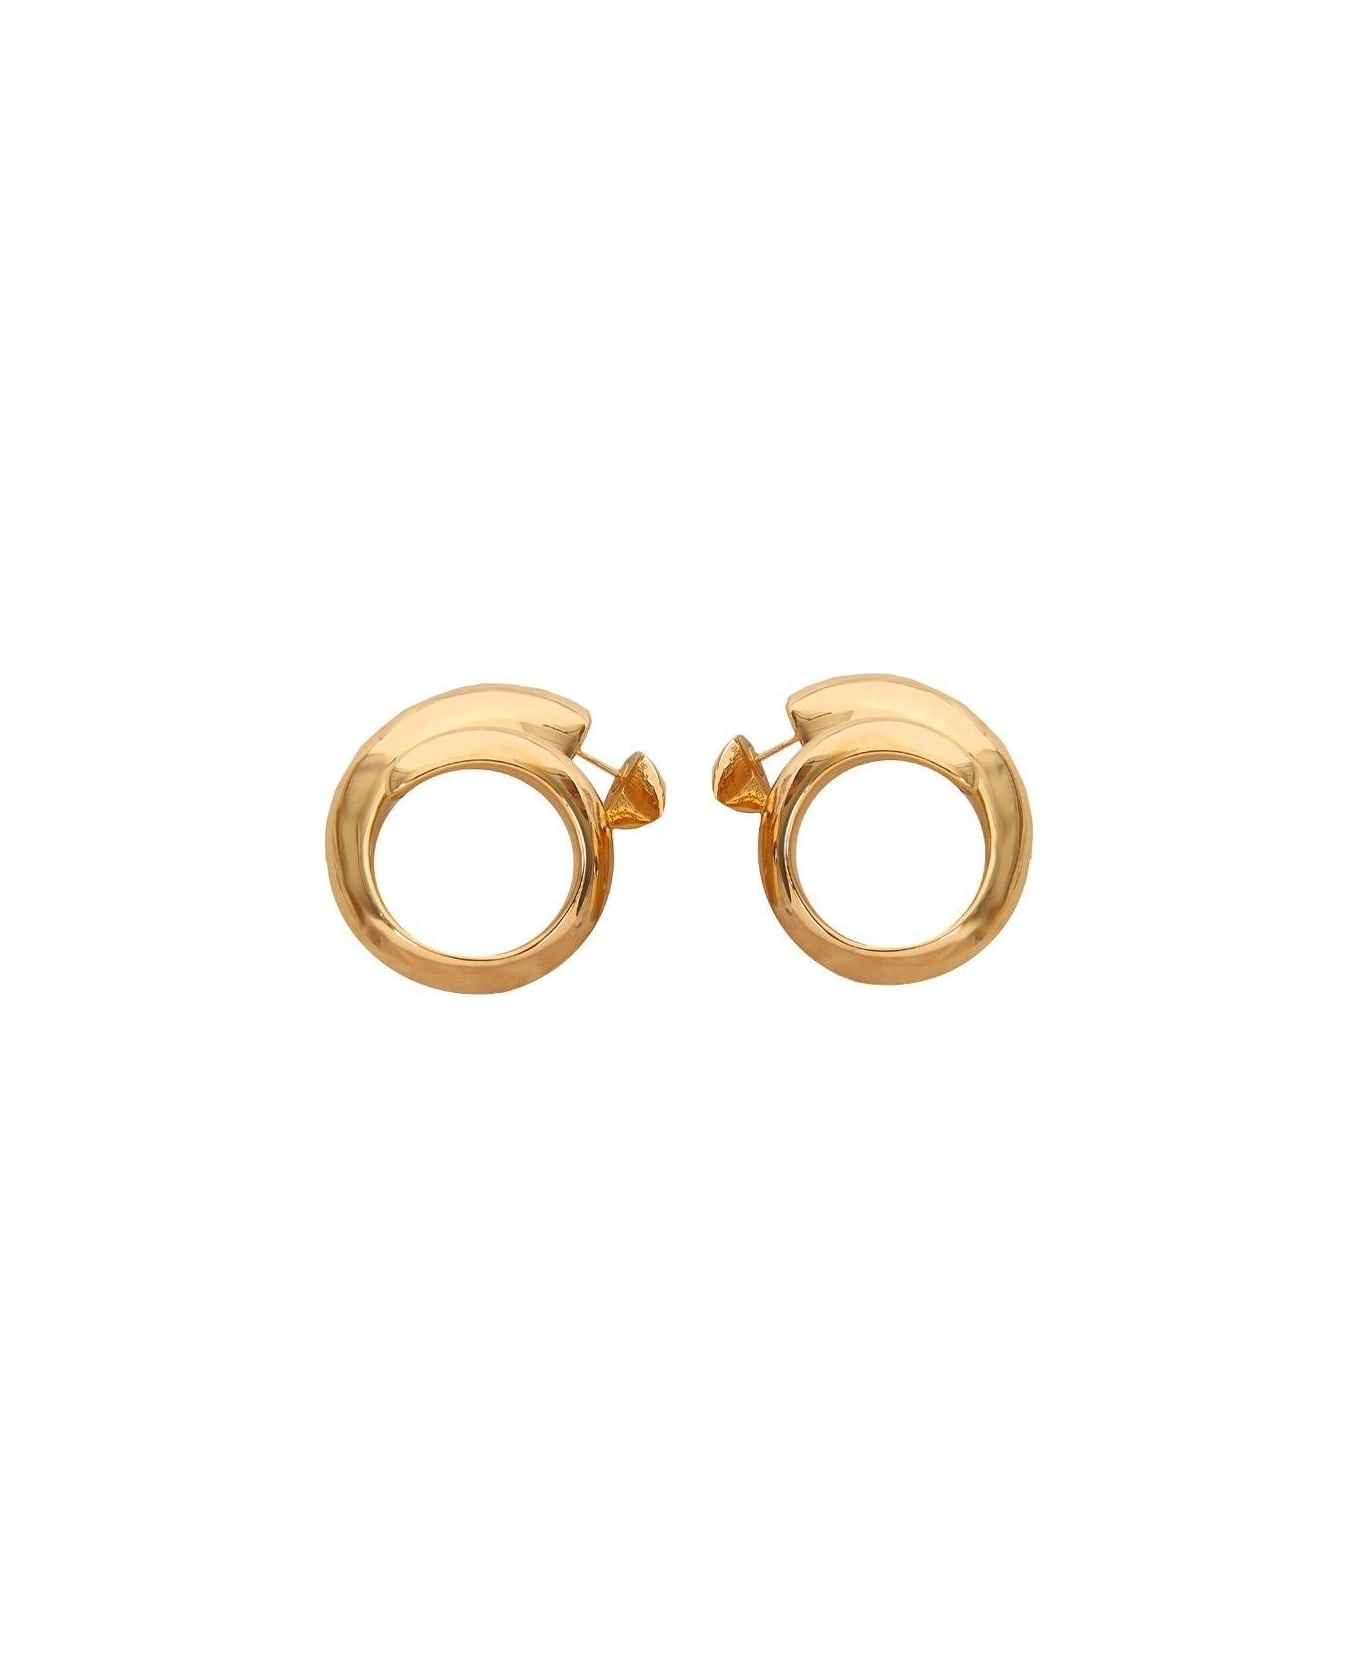 Bottega Veneta Spiral Earrings - GOLD